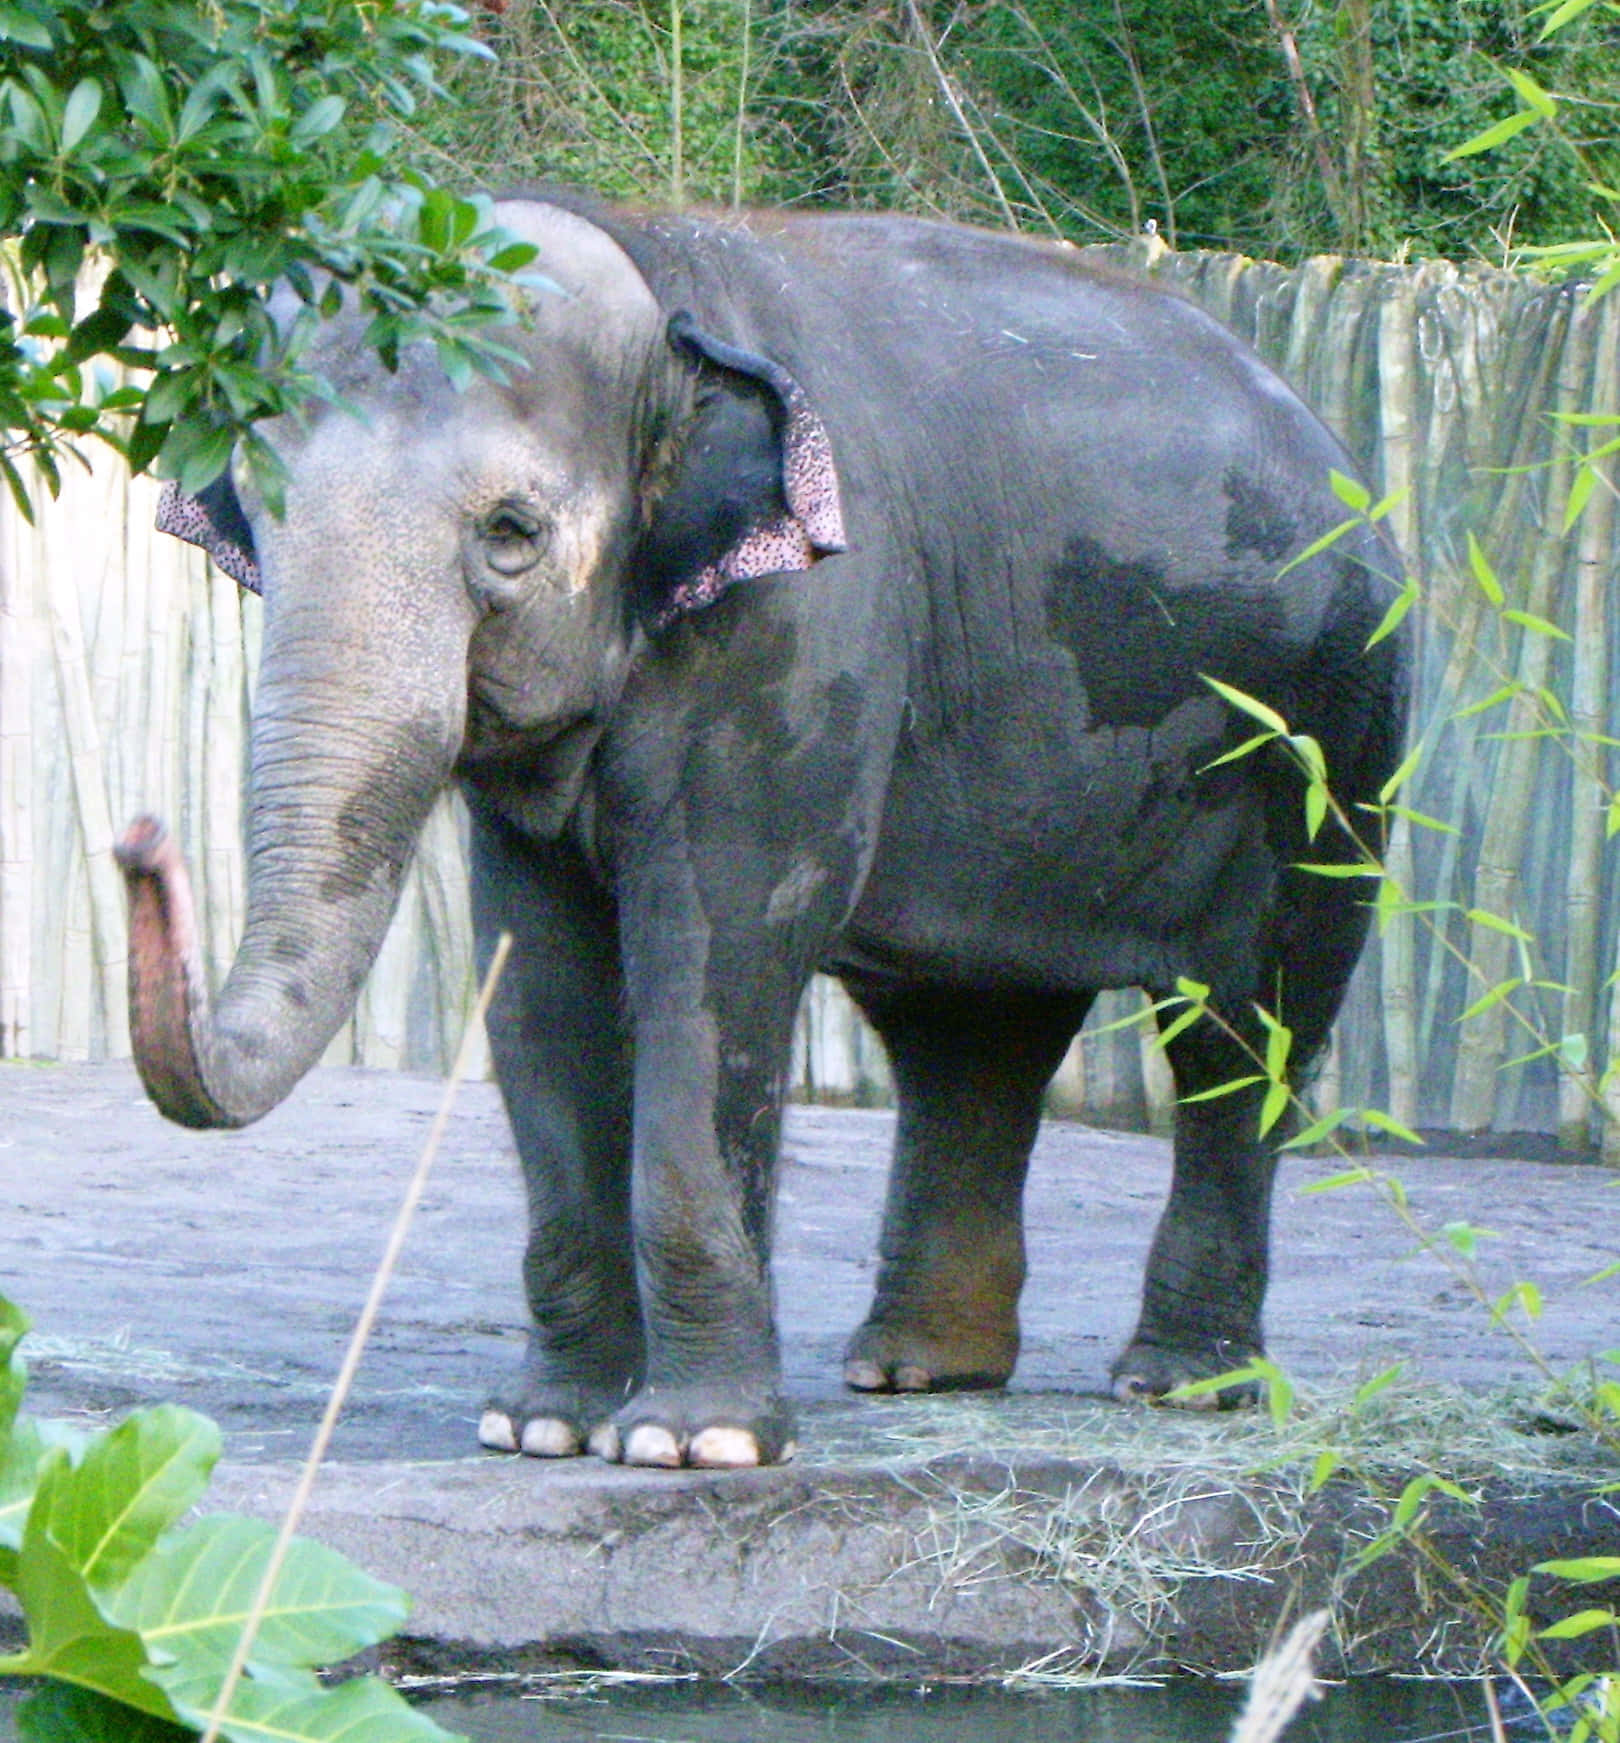 An Elephant walks across the savannah